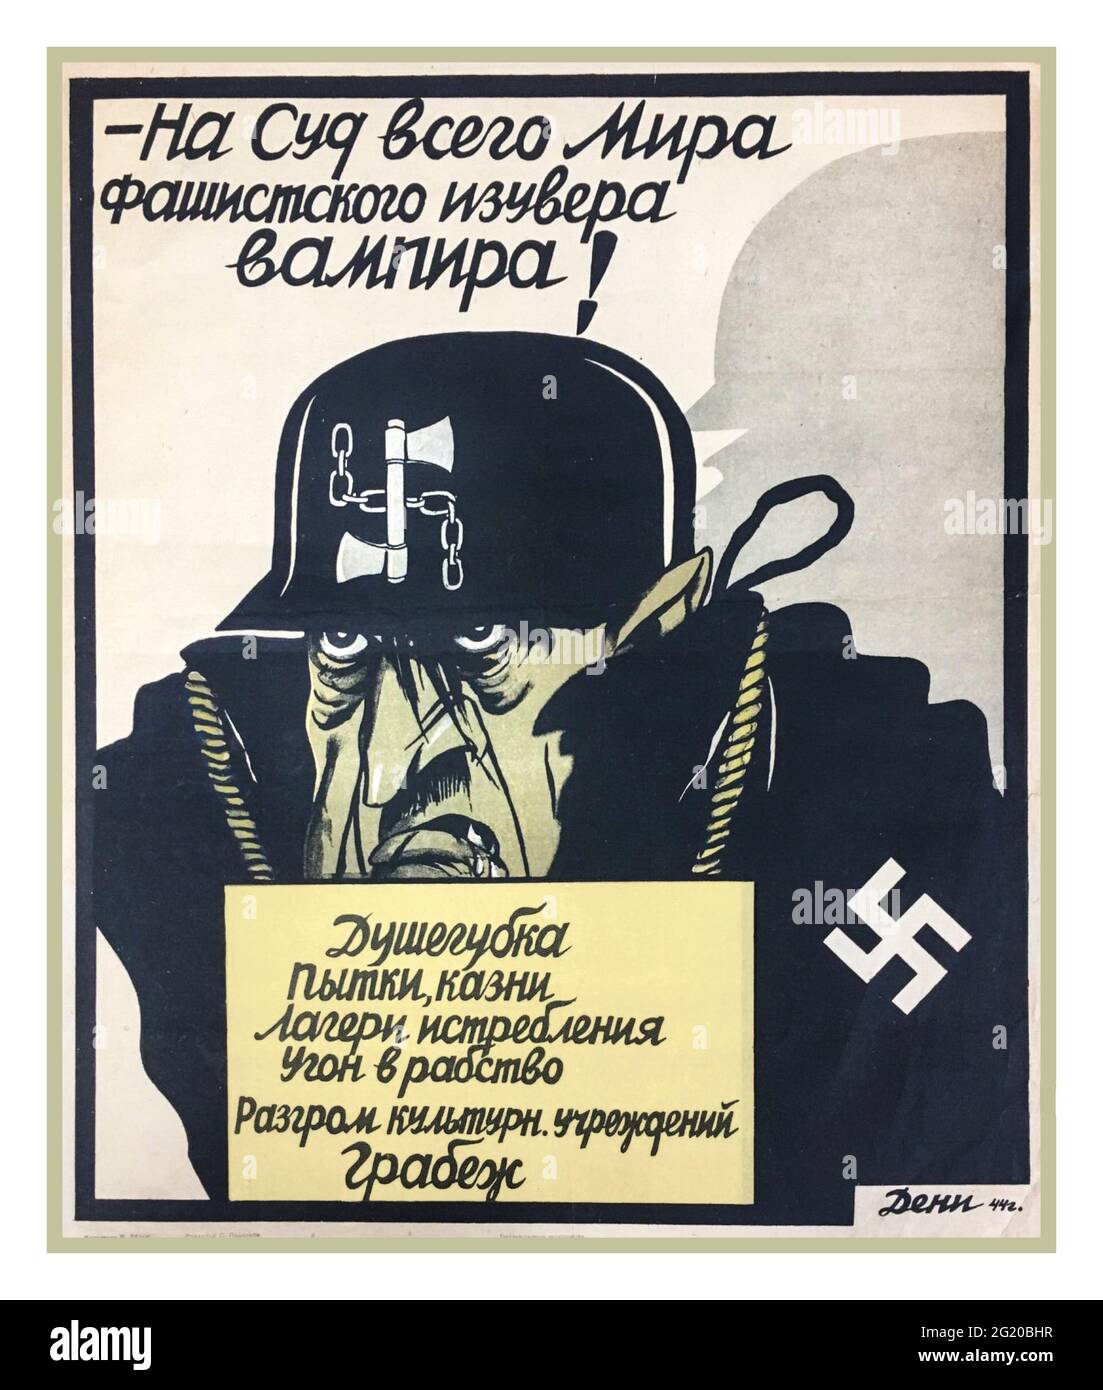 Russland Propaganda Poster Adolf Hitler mit Swastika Karikatur Karikatur 2. Weltkrieg . 1944. ‘nach dem Urteil der ganzen Welt des faschistischen fanatischen Vampirs’ Datum 1944 UdSSR Sowjetunion Russland 2. Weltkrieg 2. Weltkrieg Stockfoto